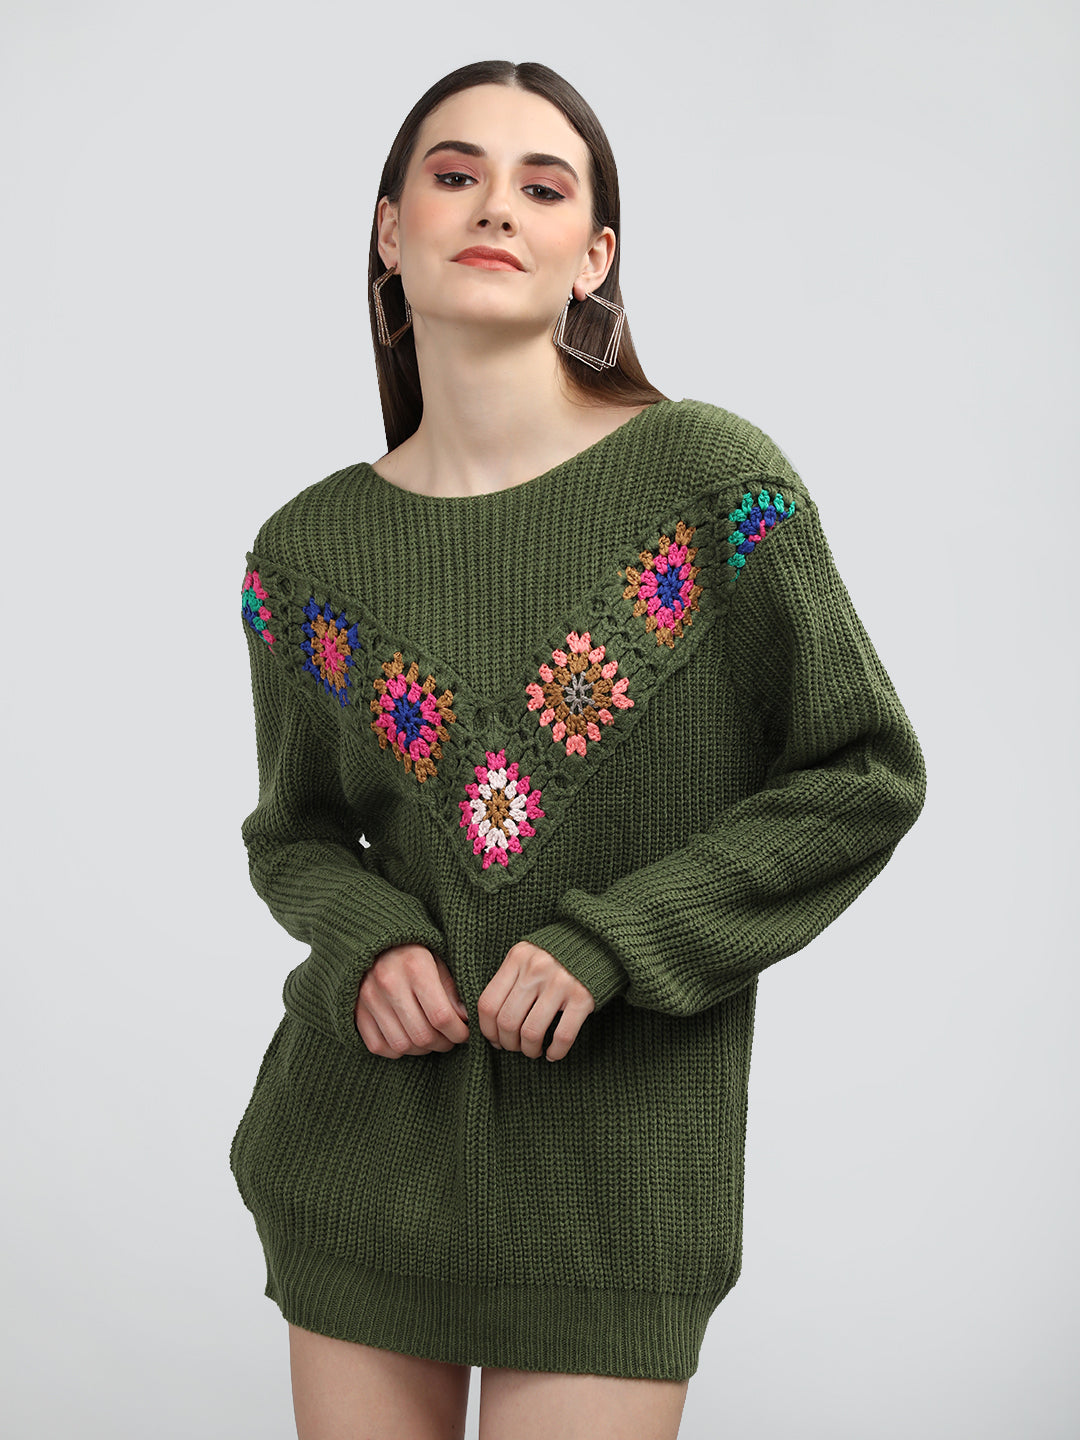 CHKOKKO Handmade Crochet Round Neck Fullsleeve Top For Women